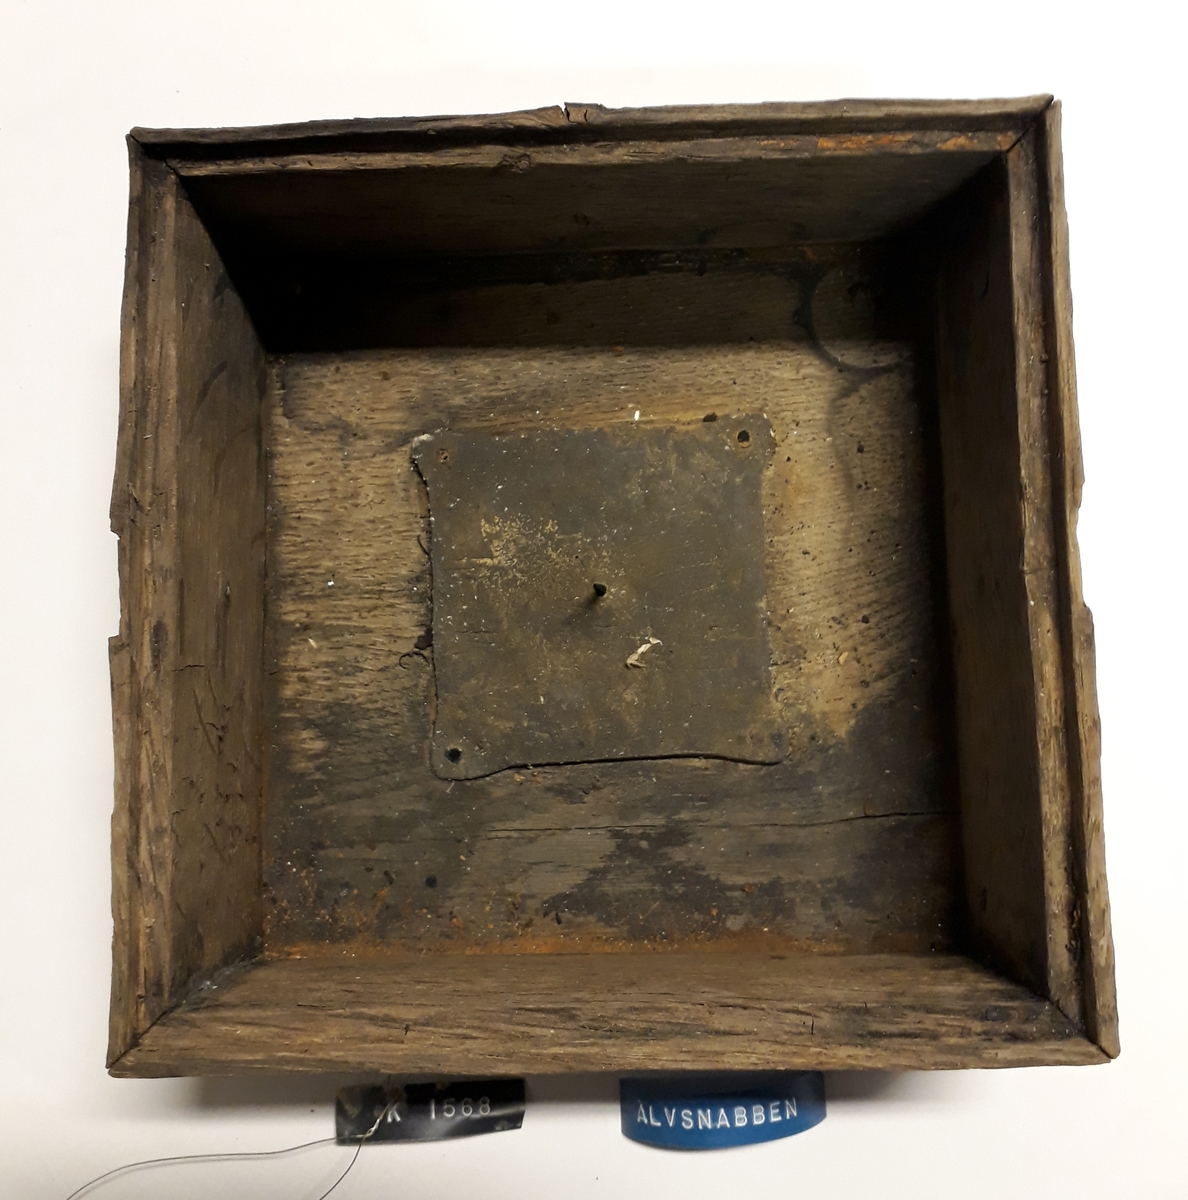 Kompass bärgad från Älvsnabbenvraket. Består av yttre trädåda med en inre låda upphängd i ett mässingsbeslag (se bilaga med rekonstruktion av kardanupphängningen). Ett av de äldsta kända kompasserna från handelsskepp från tidigt 1700-tal. 
Innerlåda för kompassupphängning. Lådan är hopsinkad av 11 mm tjocka brädor. Överkanten har en 5 mm fals för en glasskiva (4a) som låg intakt på lådan då den hittades.
I lådans botten är en kvadratisk blyplåt fastnitad för att hålla tyngdpunkten låg. i mitten av plåten upphängningsspets av mässing.